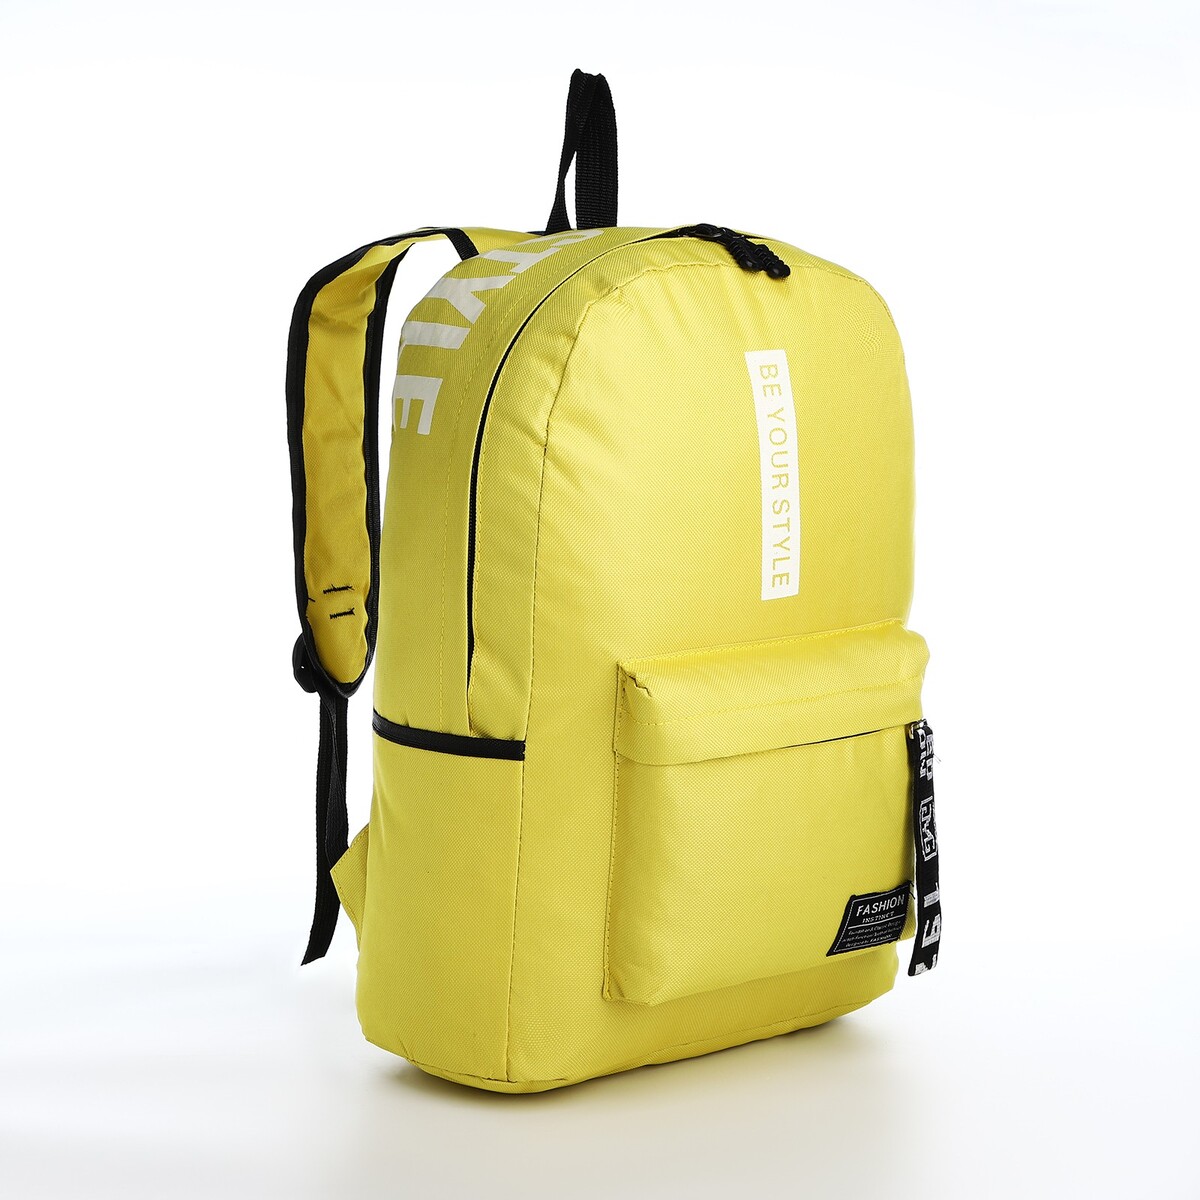 Рюкзак на молнии, наружный карман, 2 боковых кармана, цвет желтый рюкзак отдел на молнии наружный карман 2 боковых кармана синий